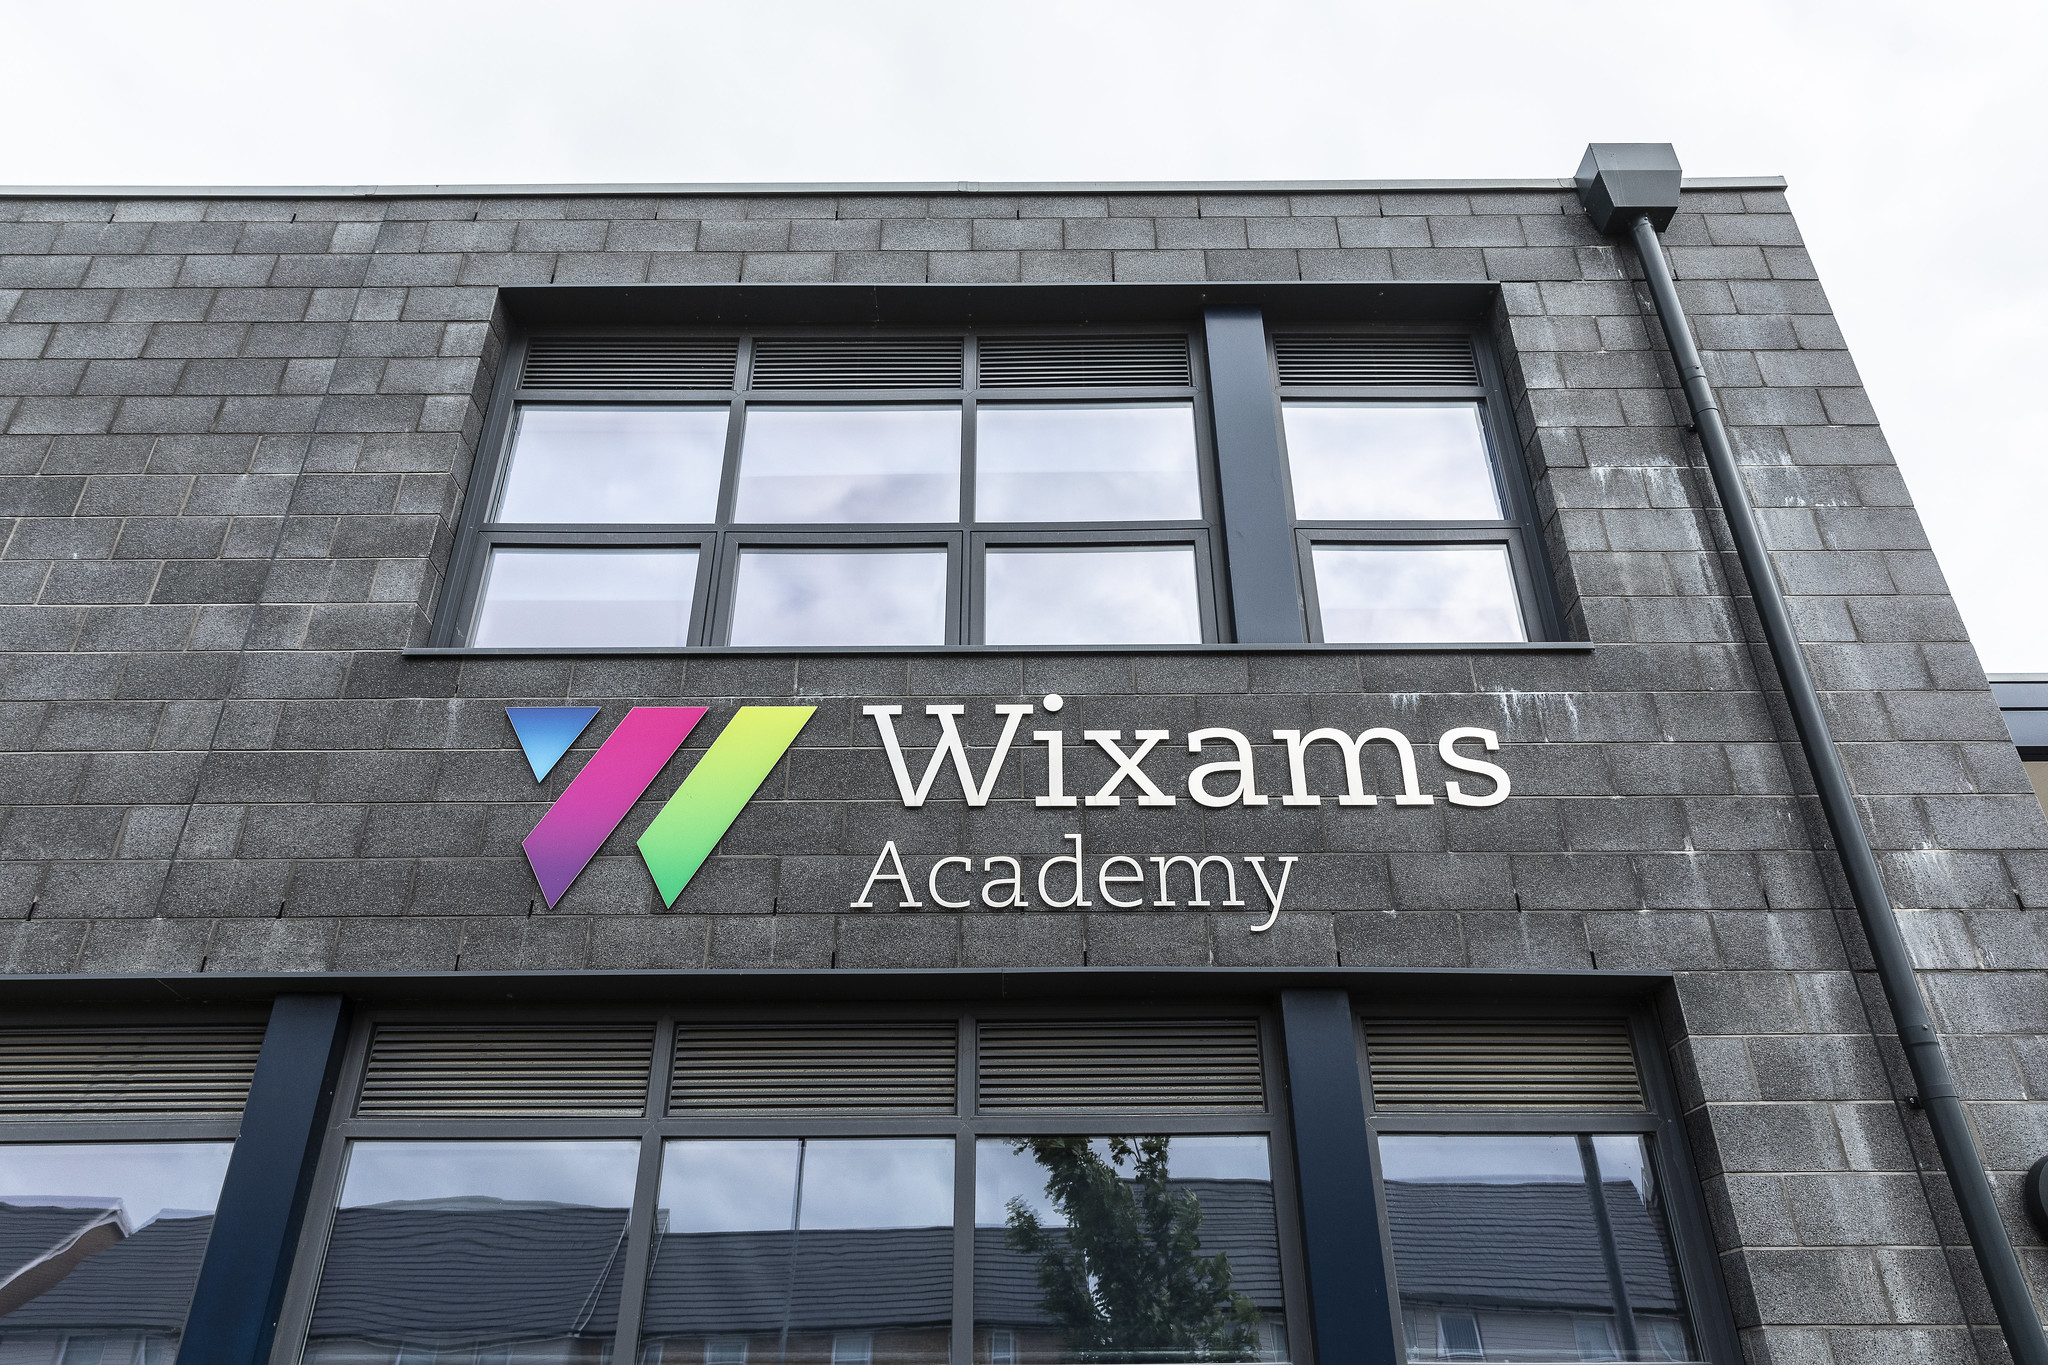 Wixams Academy External